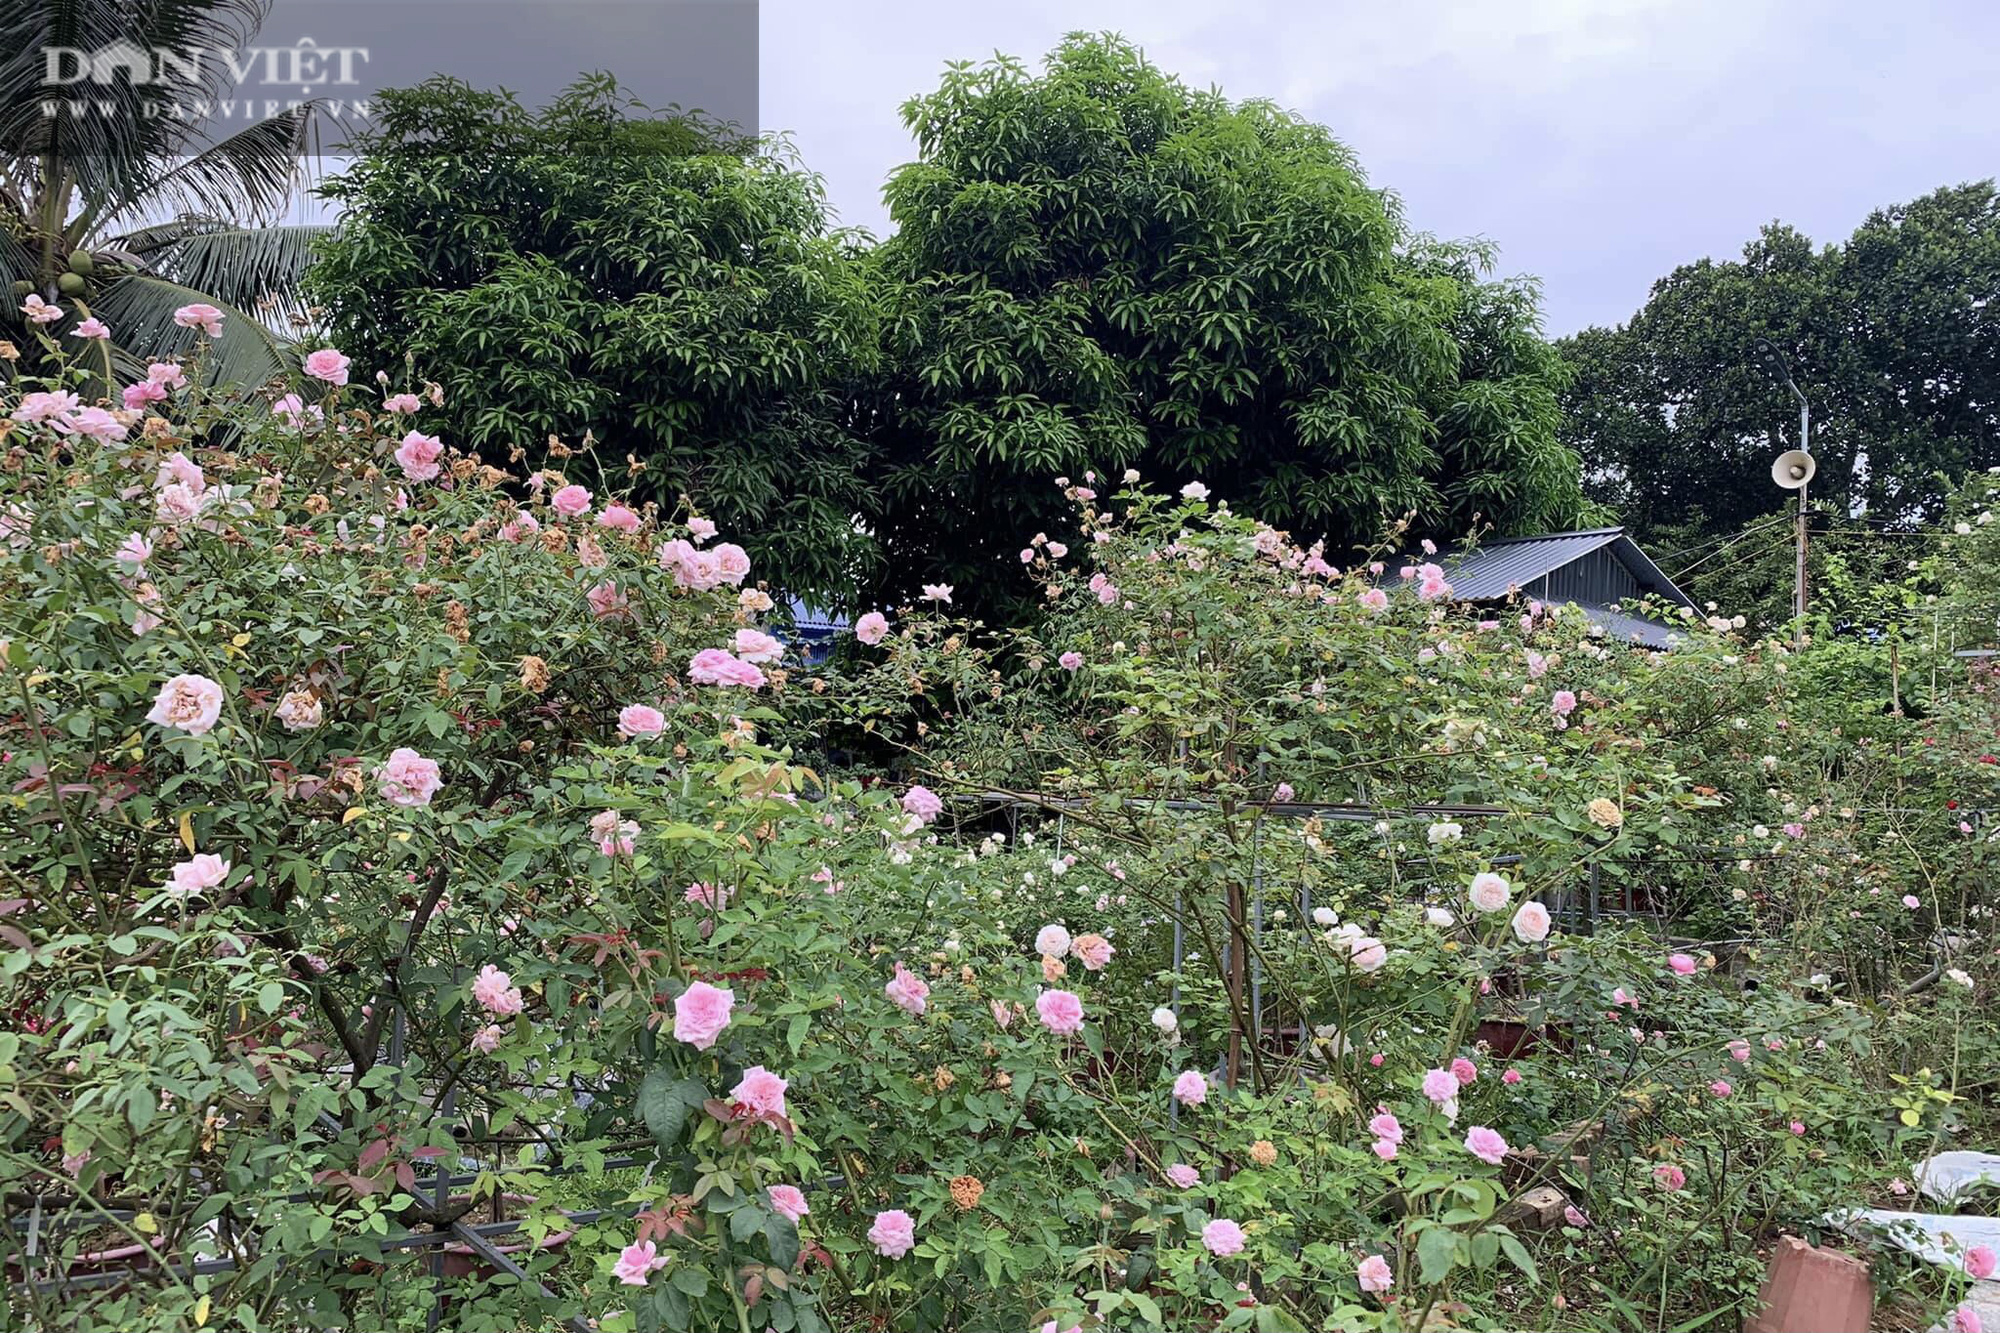 Thái Nguyên: Trai trẻ 8X “gác” bằng đại học về quê trồng thứ hoa thơm ngát cả vùng, kiếm hàng chục triệu đồng mỗi tháng - Ảnh 7.